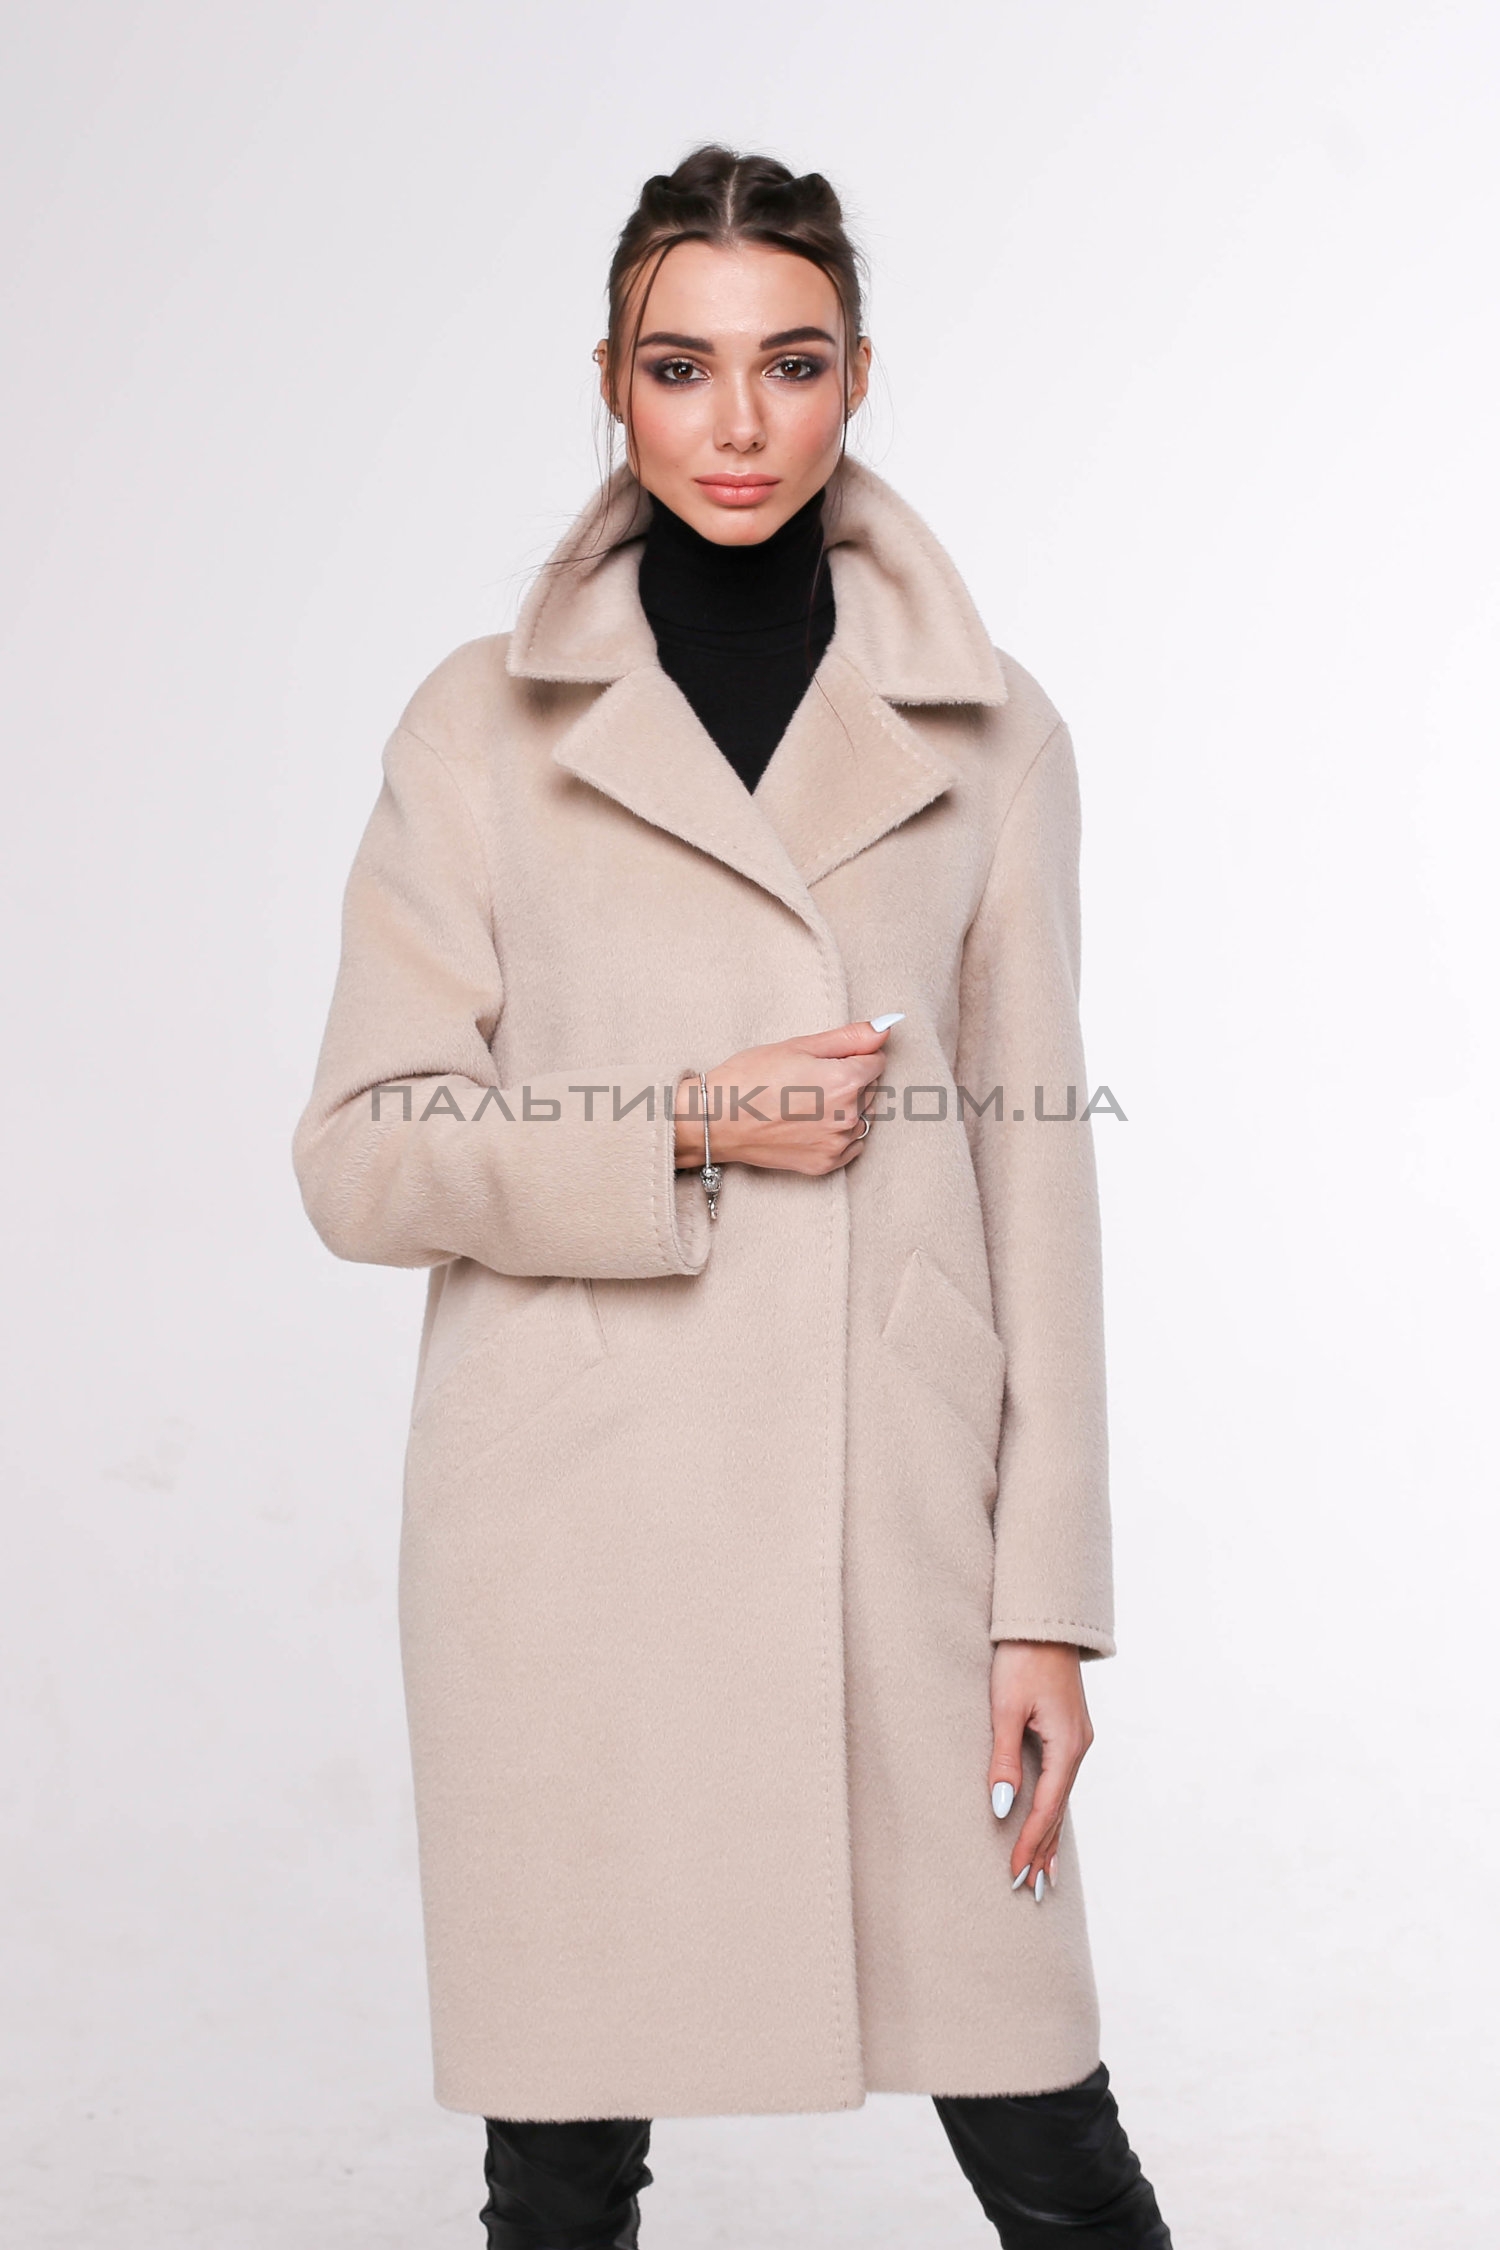  Женское пальто № 115